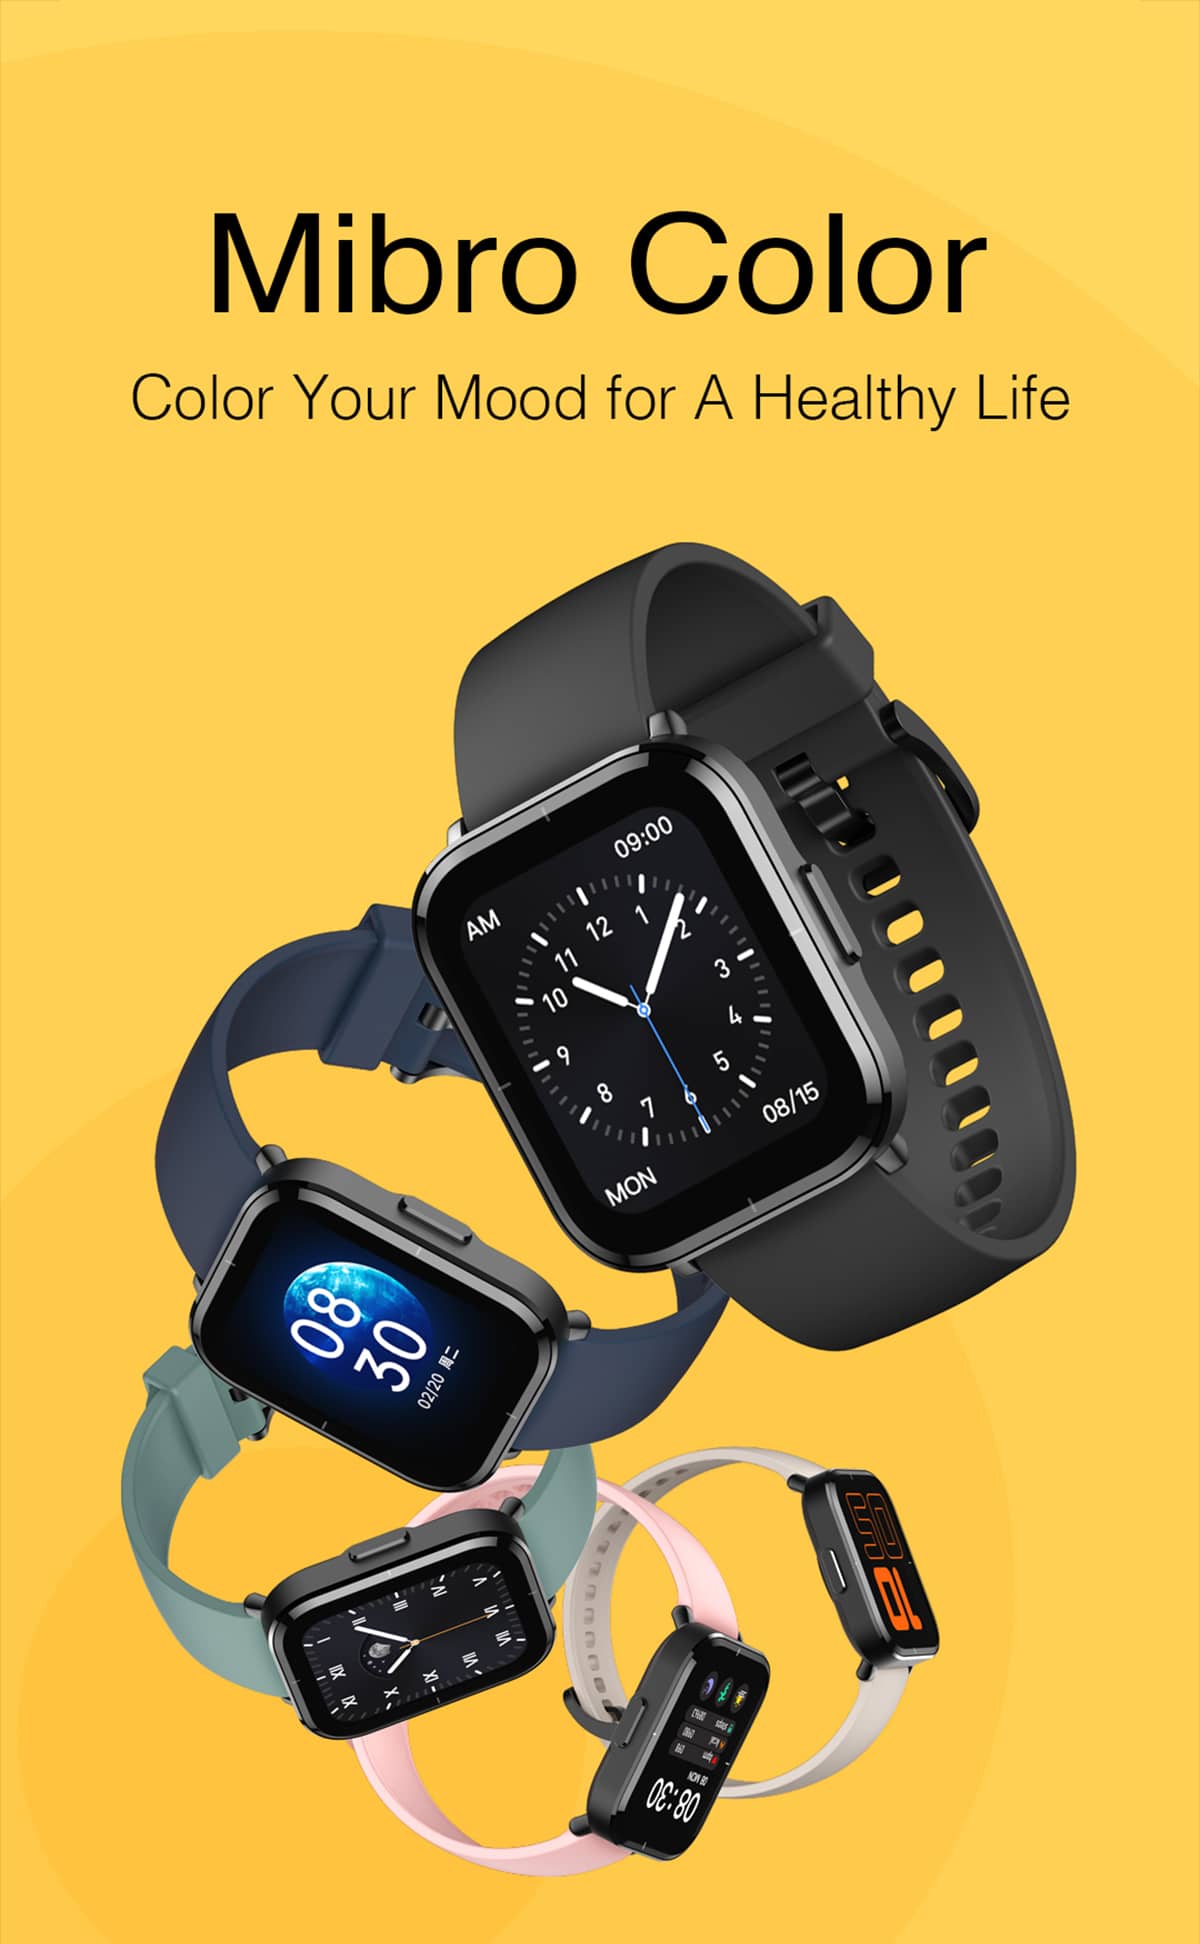 ساعت هوشمند میبرو مدل Mibro Color